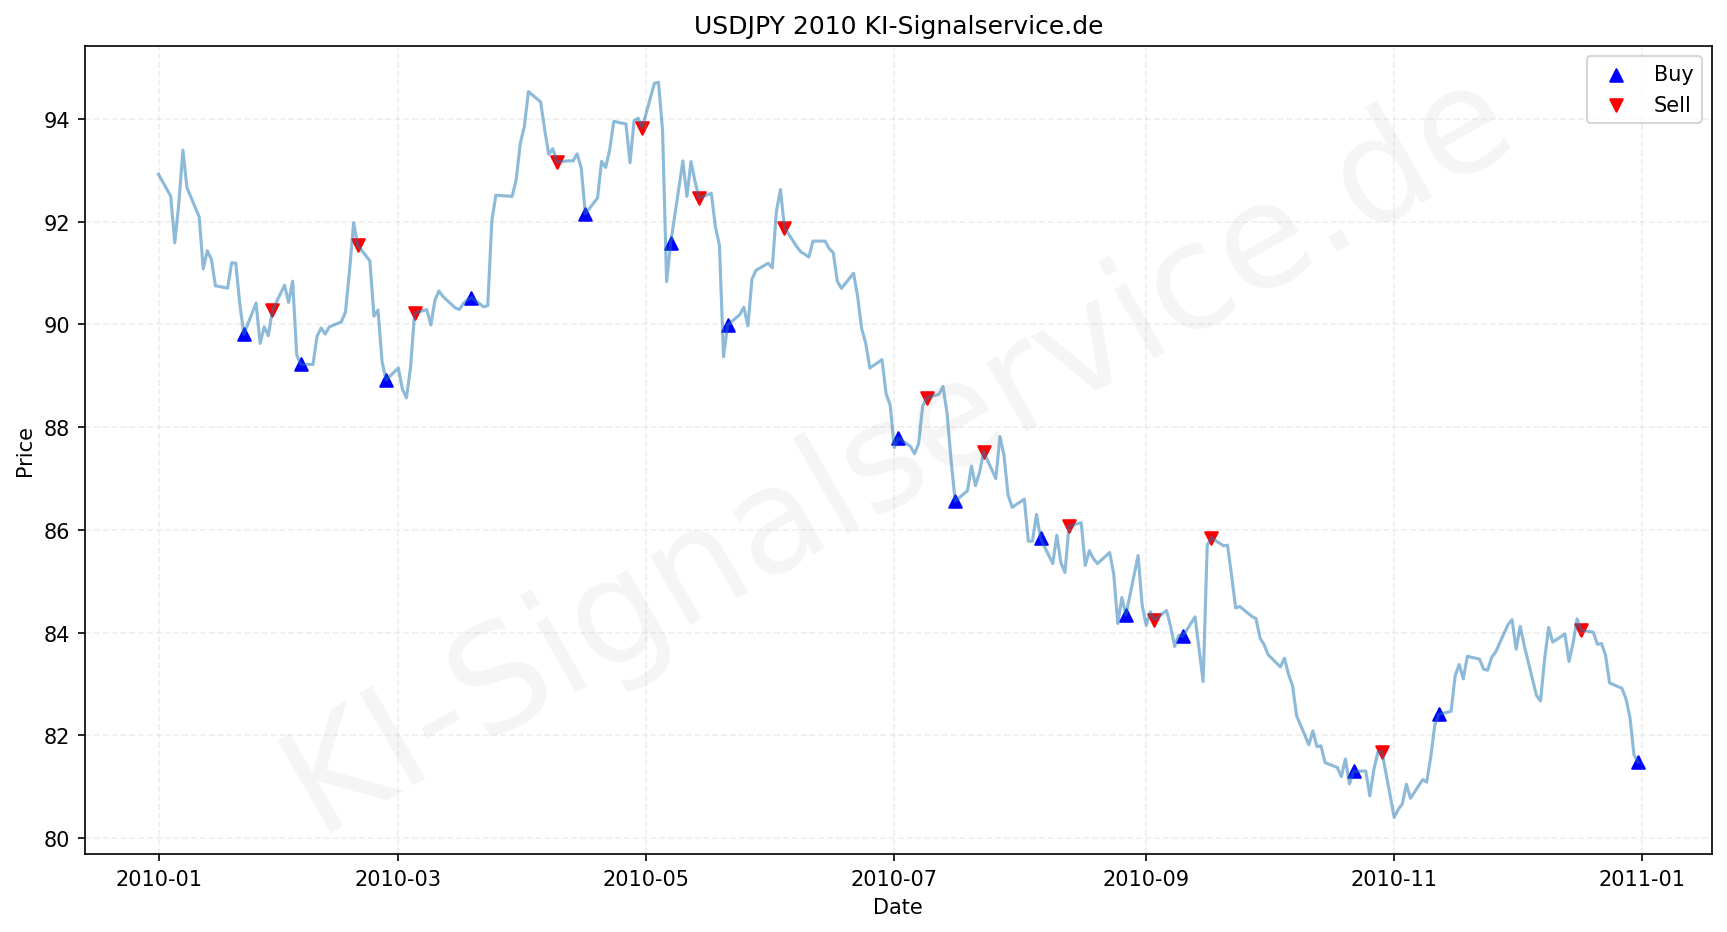 USDJPY Chart - KI Tradingsignale 2010